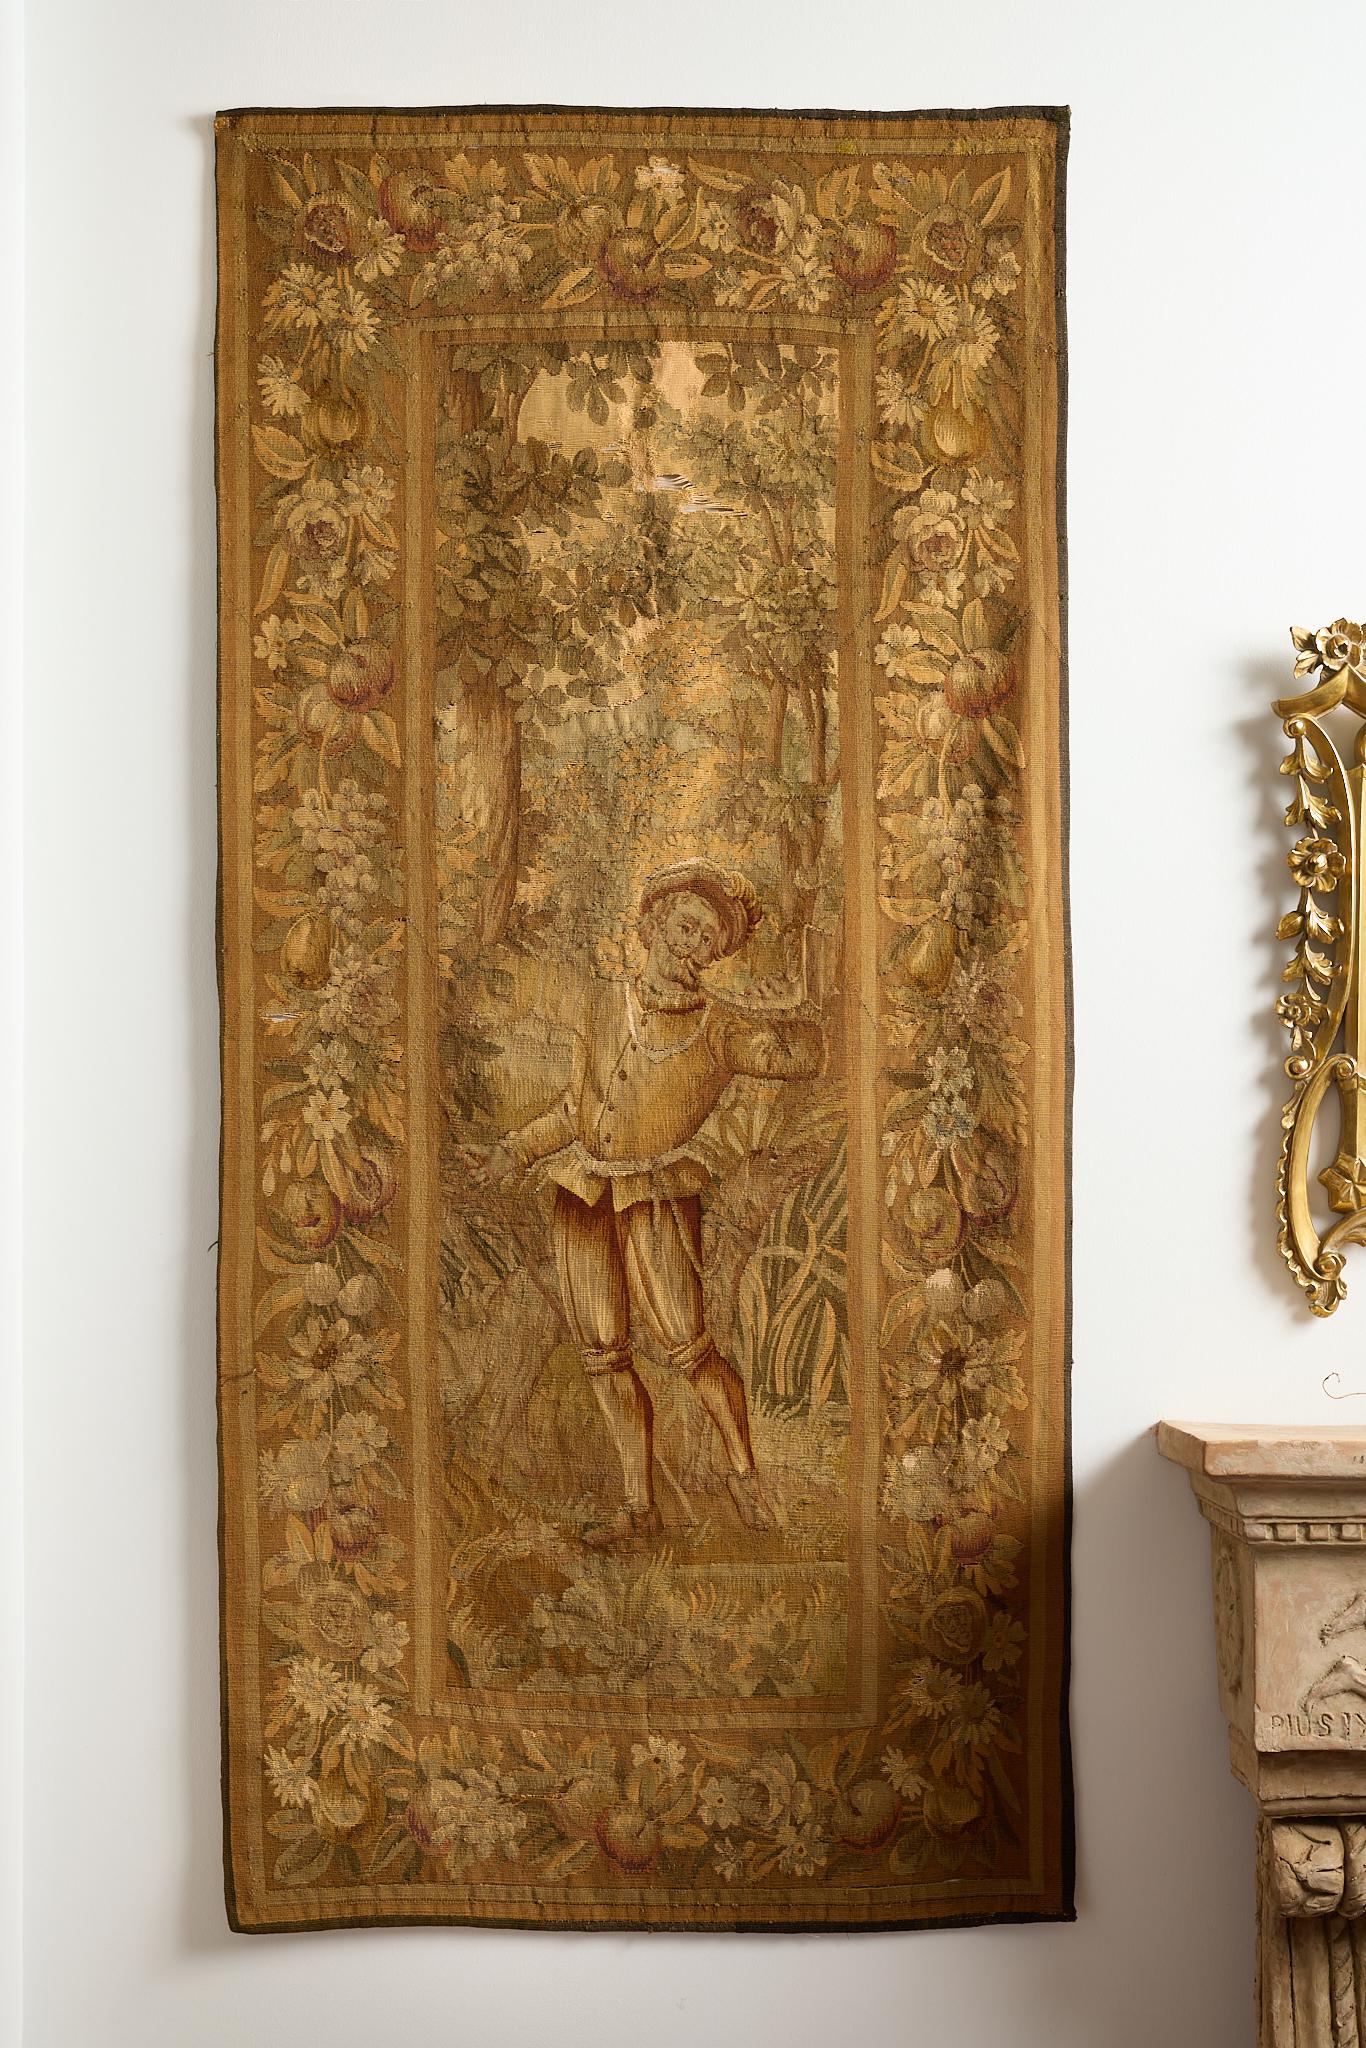 Zwei große französische Figurentapisserien aus dem 18. Jahrhundert, jede mit einer männlichen Figur in der Mitte, die in der Natur steht, eine bläst in ein Jagdhorn, die andere hebt den Arm in einer suchenden Geste. Beide mit einem Rahmen aus